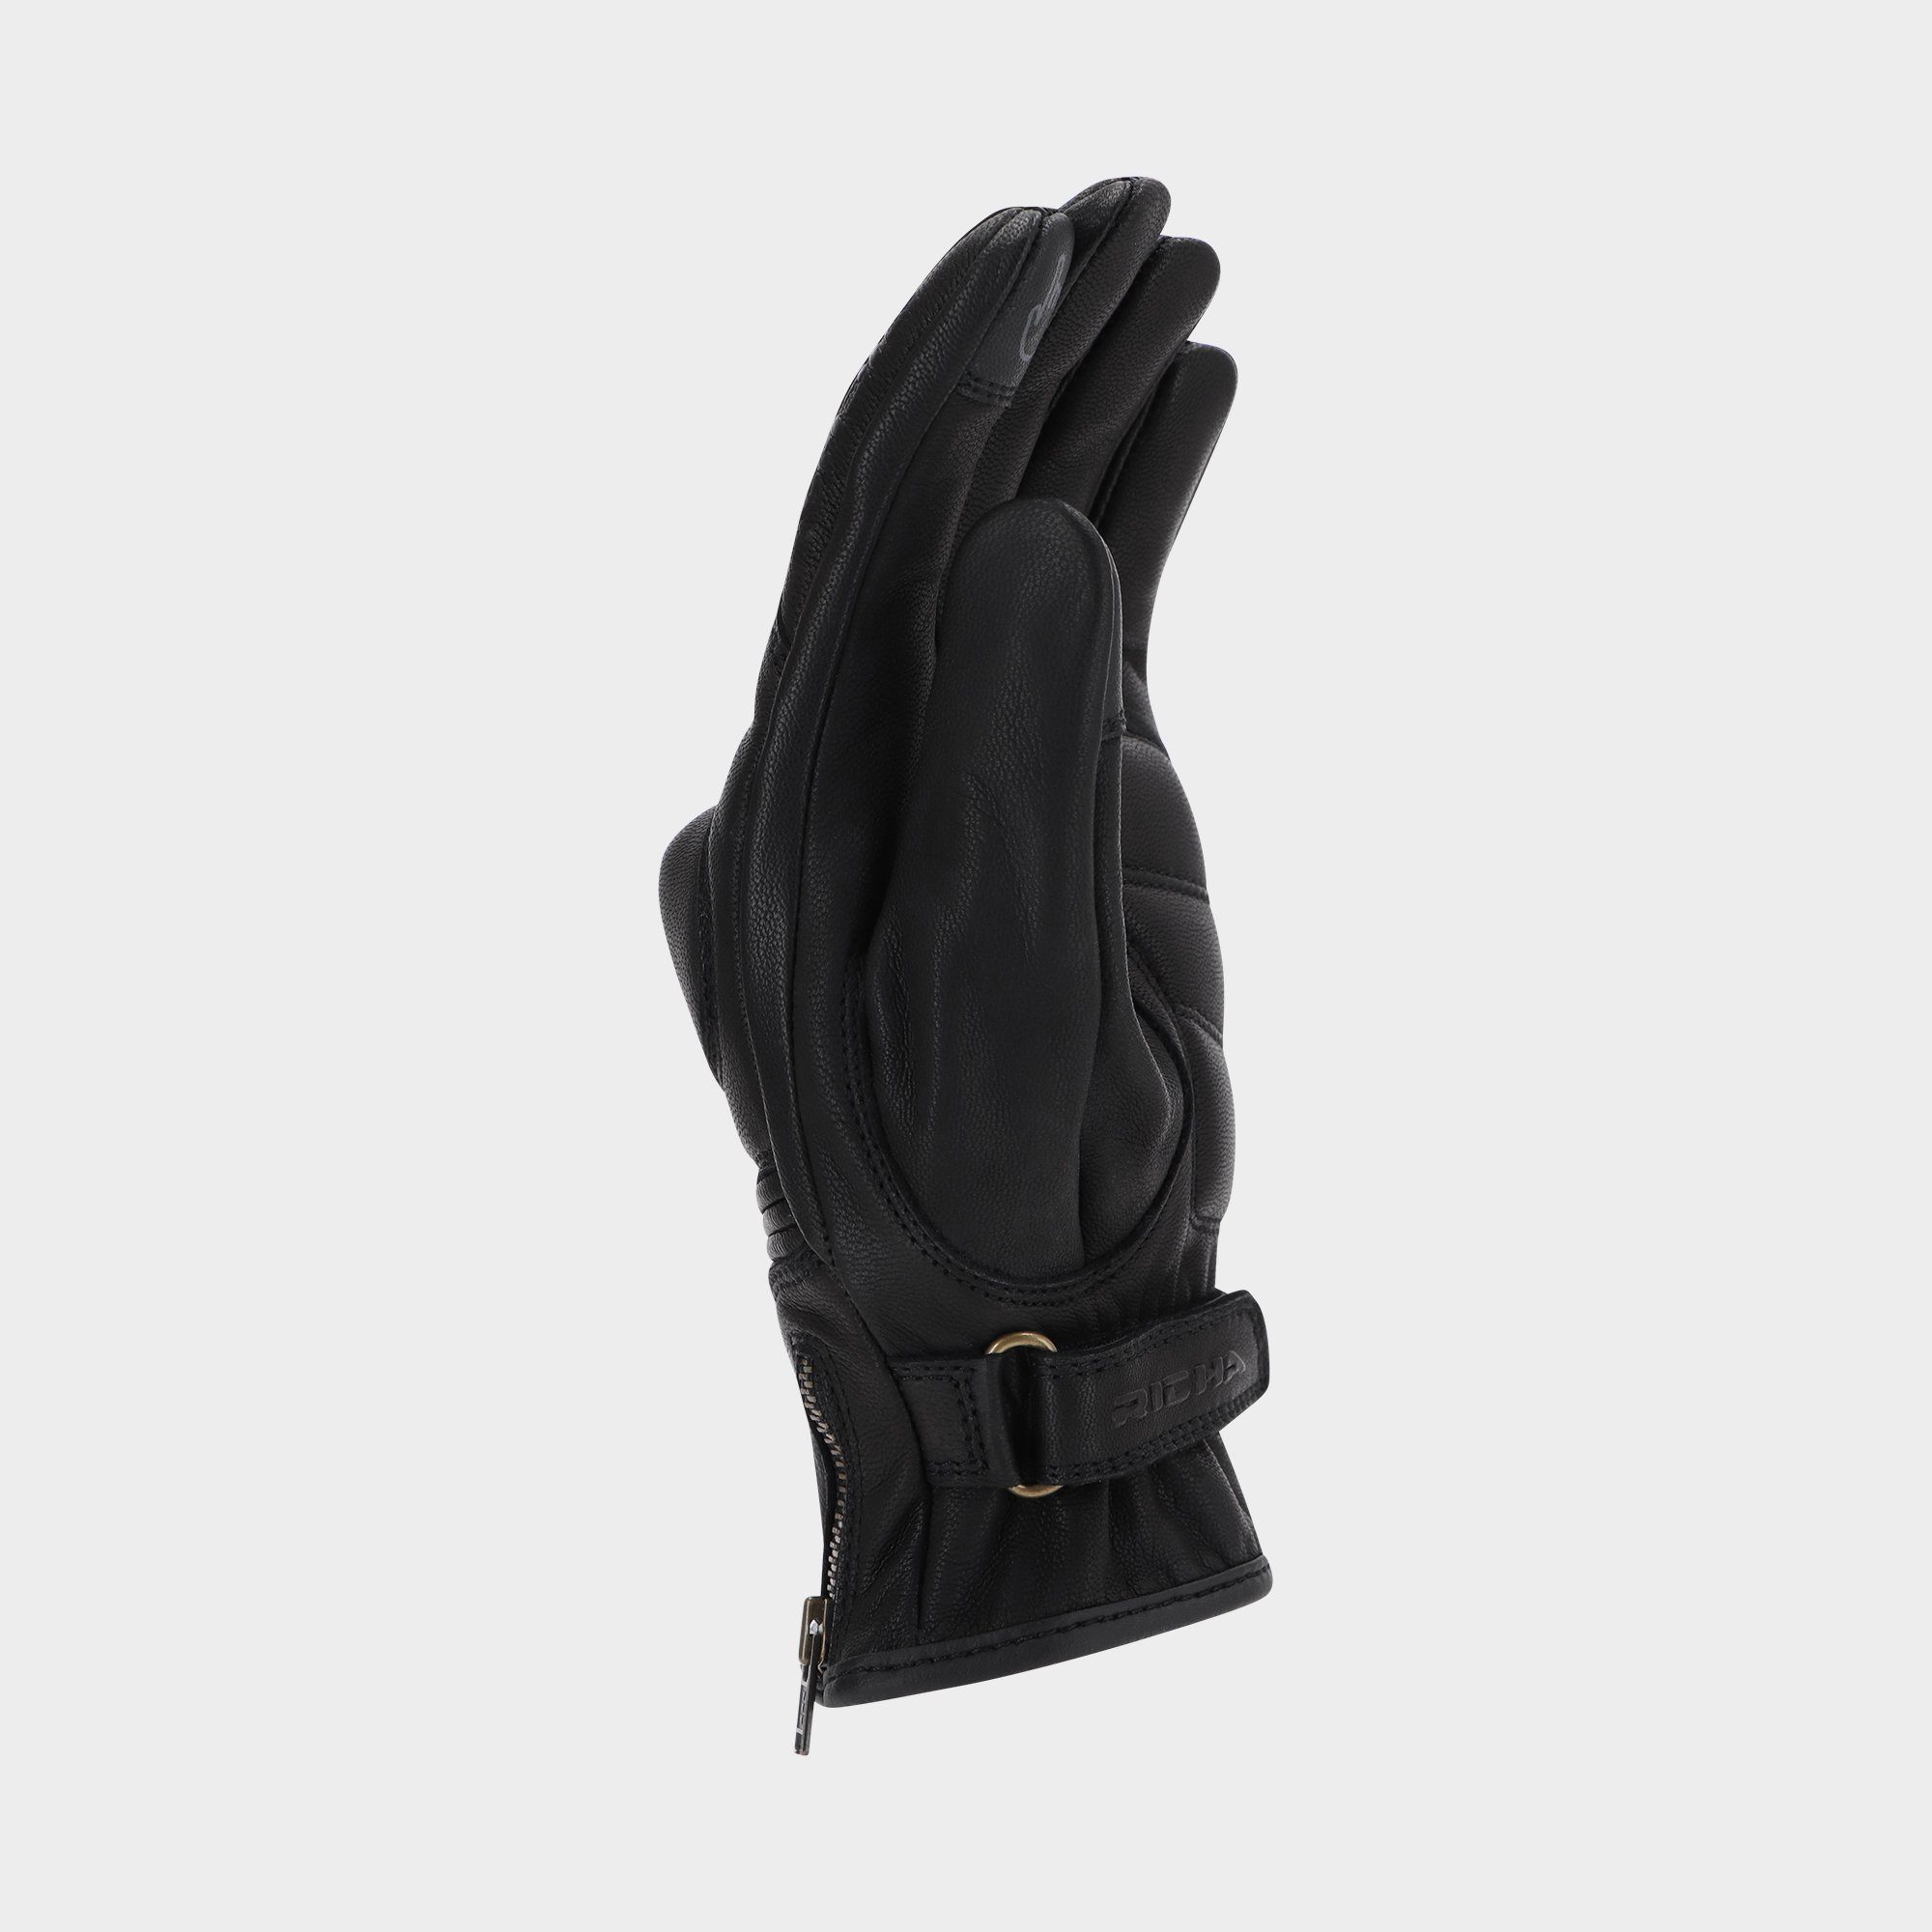 Damen Herren Richa Motorradhandschuhe Nazaire schwarz Leder Richa Handschuh Handprotektoren